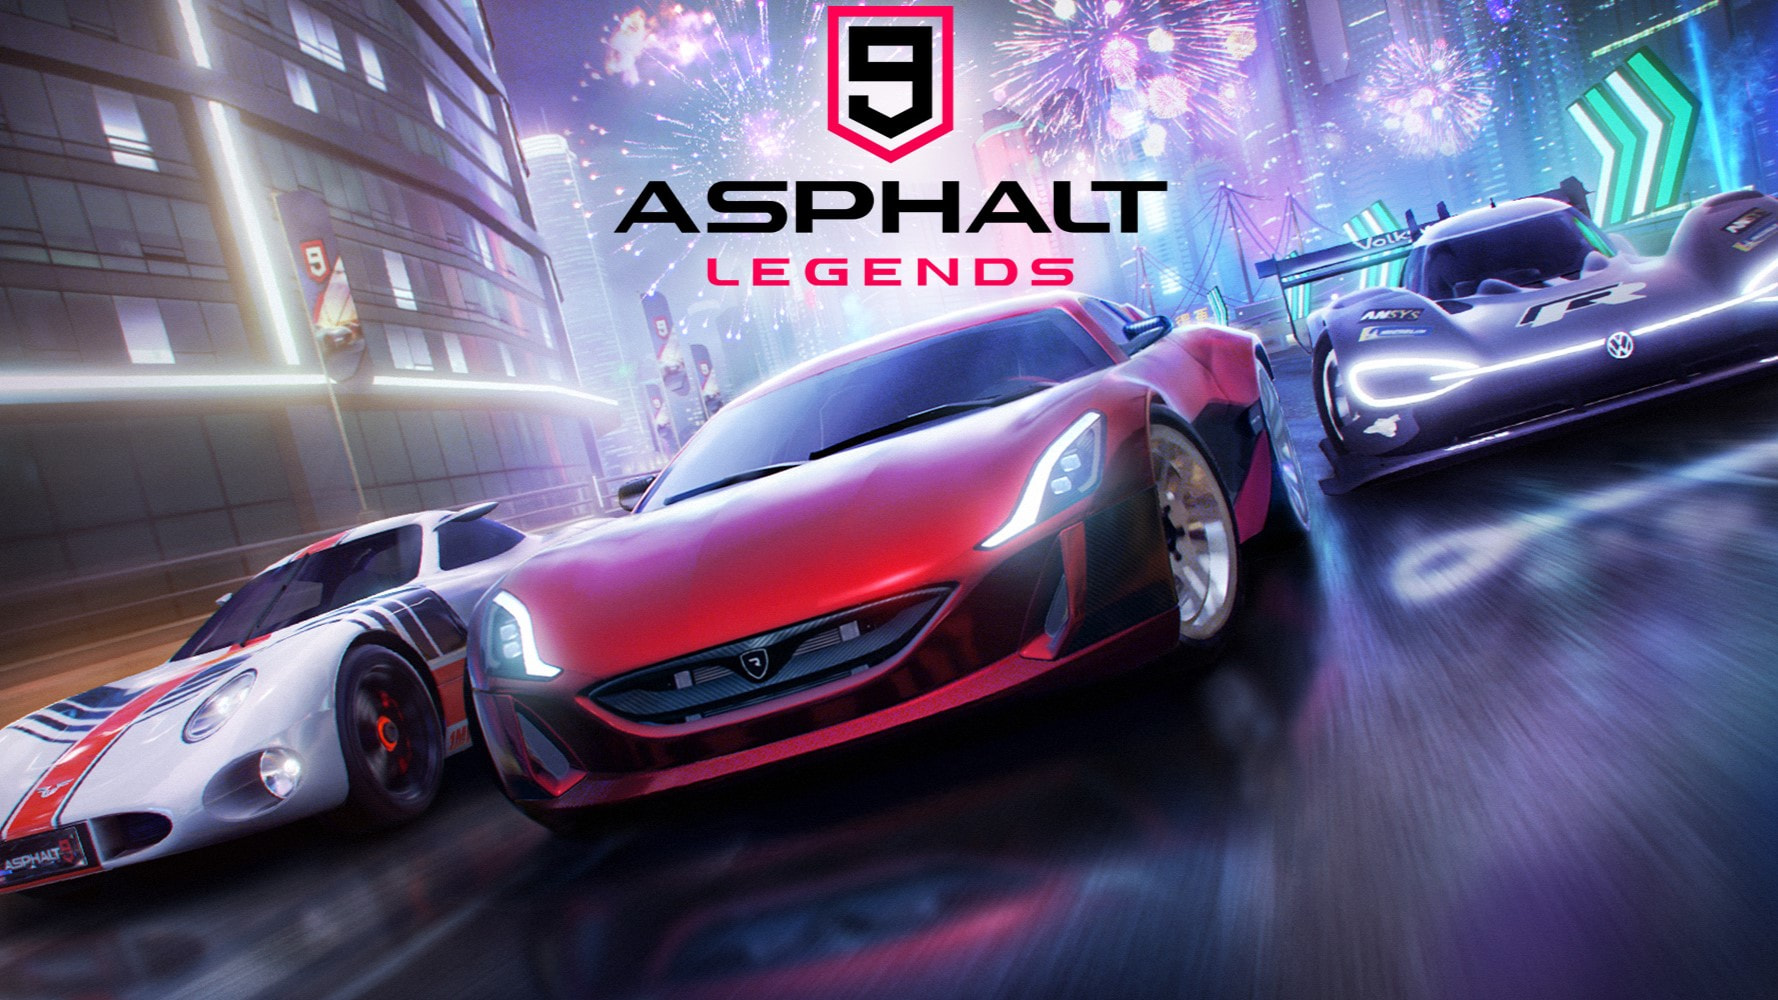 Asphalt 9 - APK Download for Android